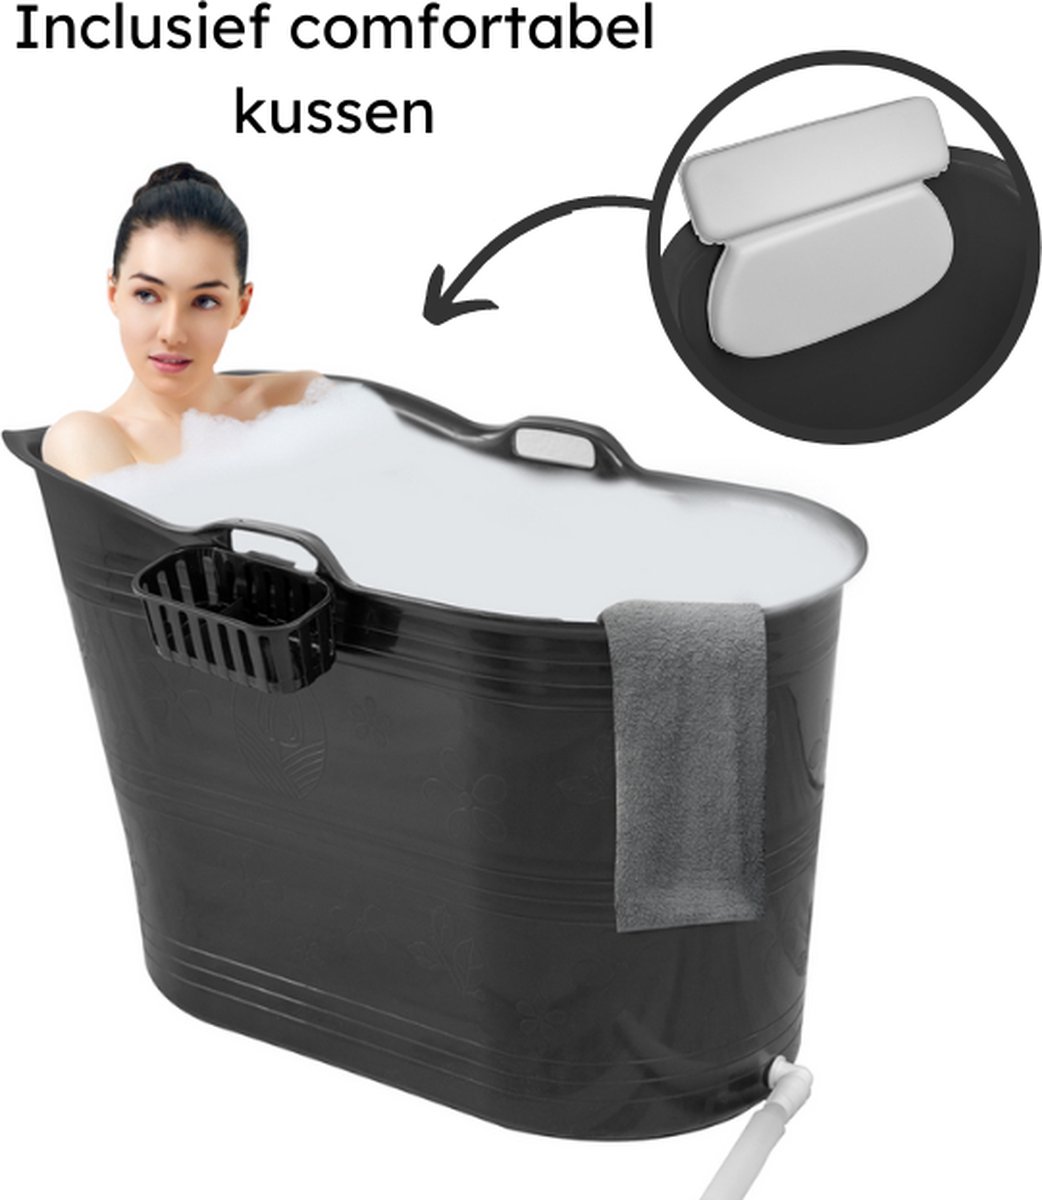 EKEO Zitbad 100CM- 210L - Mobiele badkuip - Bath Bucket - Inclusief kussen - Zwart